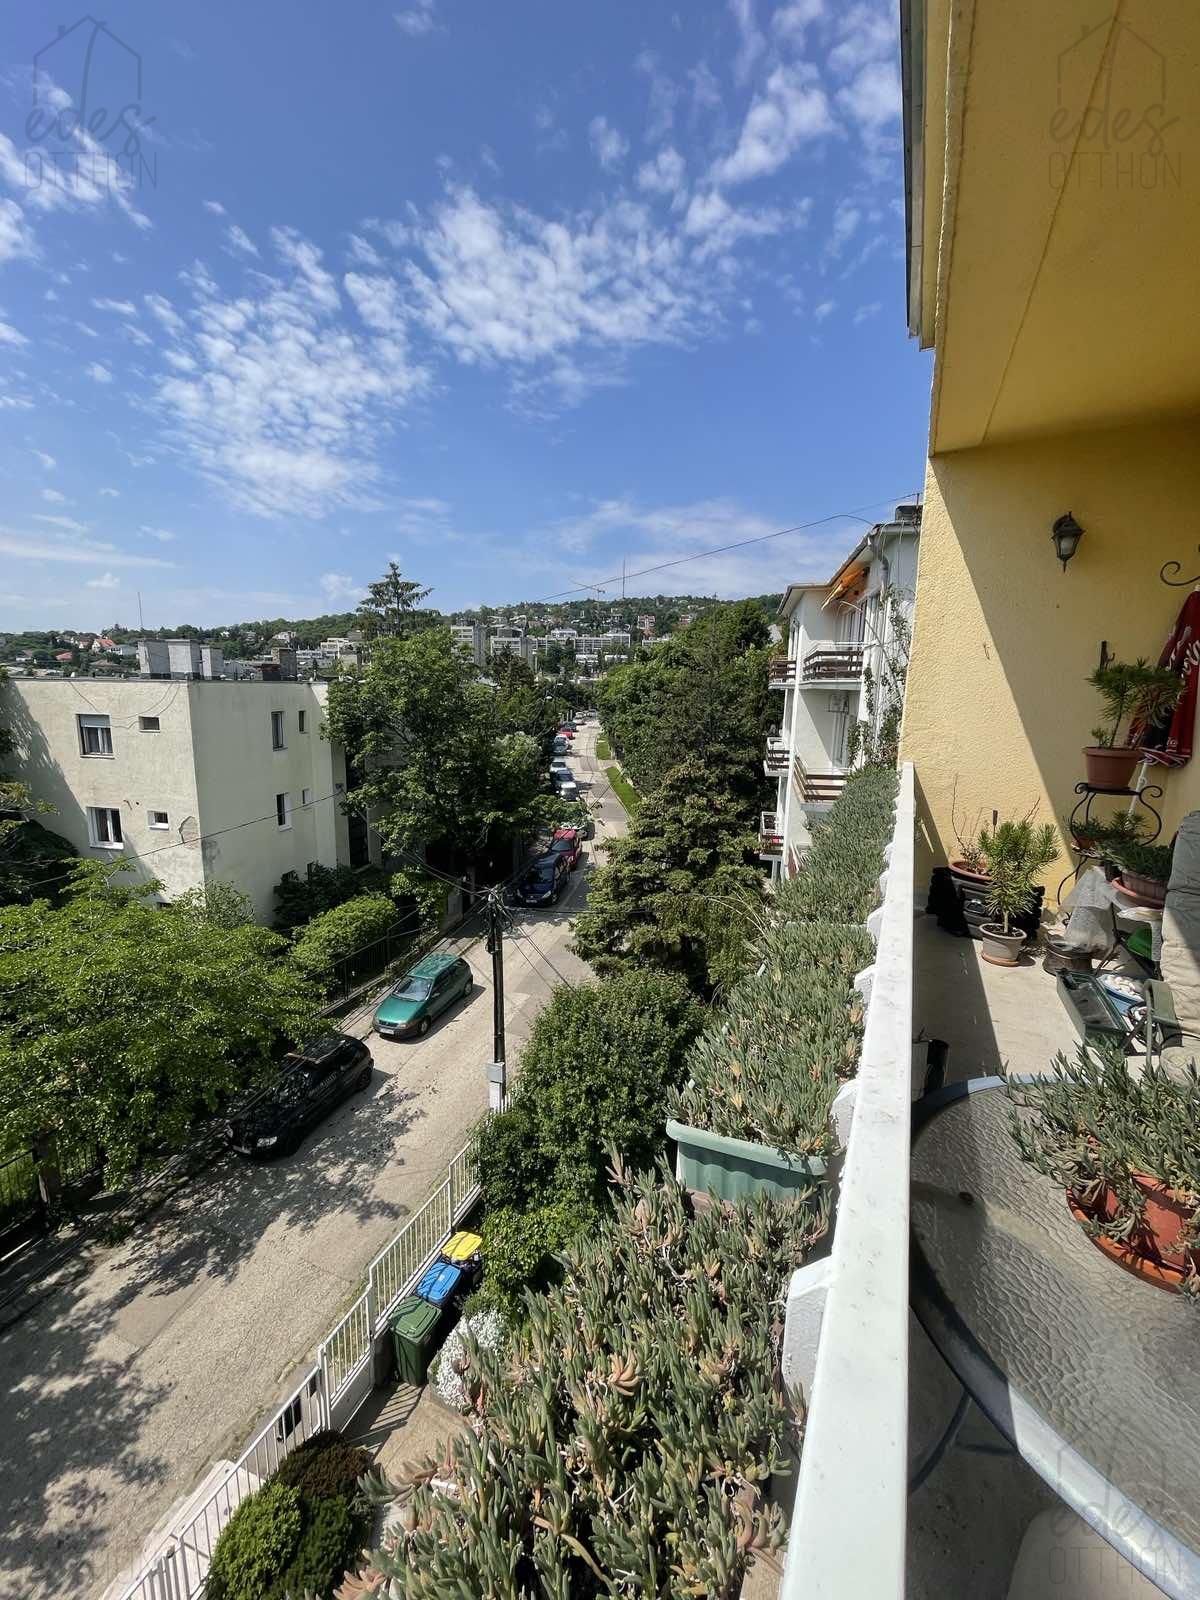 Bérbeadó egy gyönyörű panorámás kilátással rendelkező lakás az Orbánhegy kiemelt utcájá...